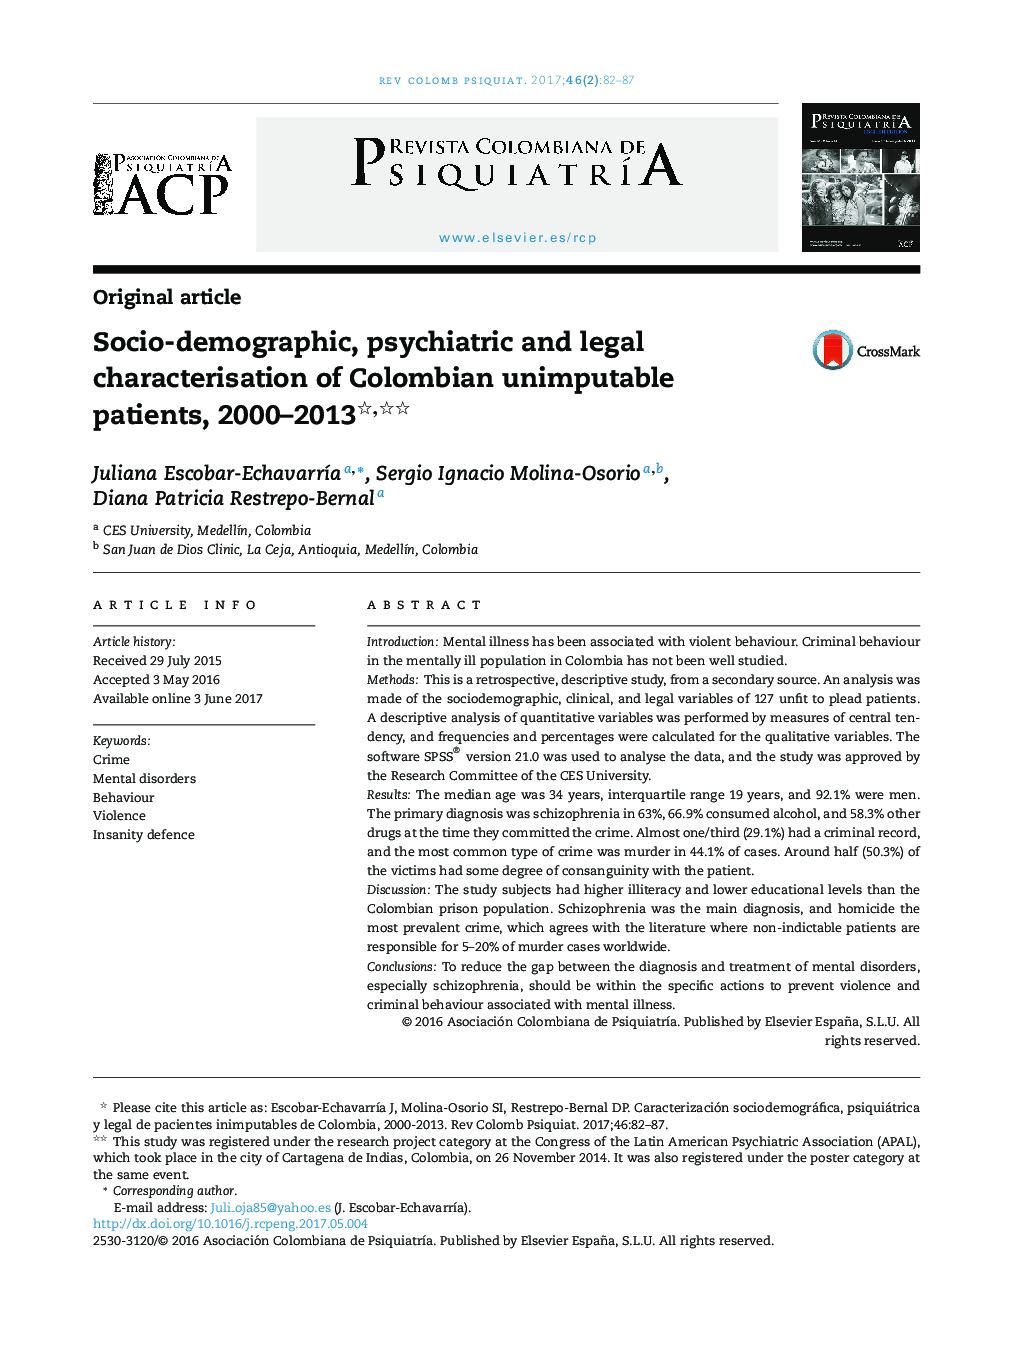 مشخصات اجتماعی و دموگرافیک، روانپزشکی و حقوقی بیماران غیر قابل تحمل کلمبیا، 2000-2013 